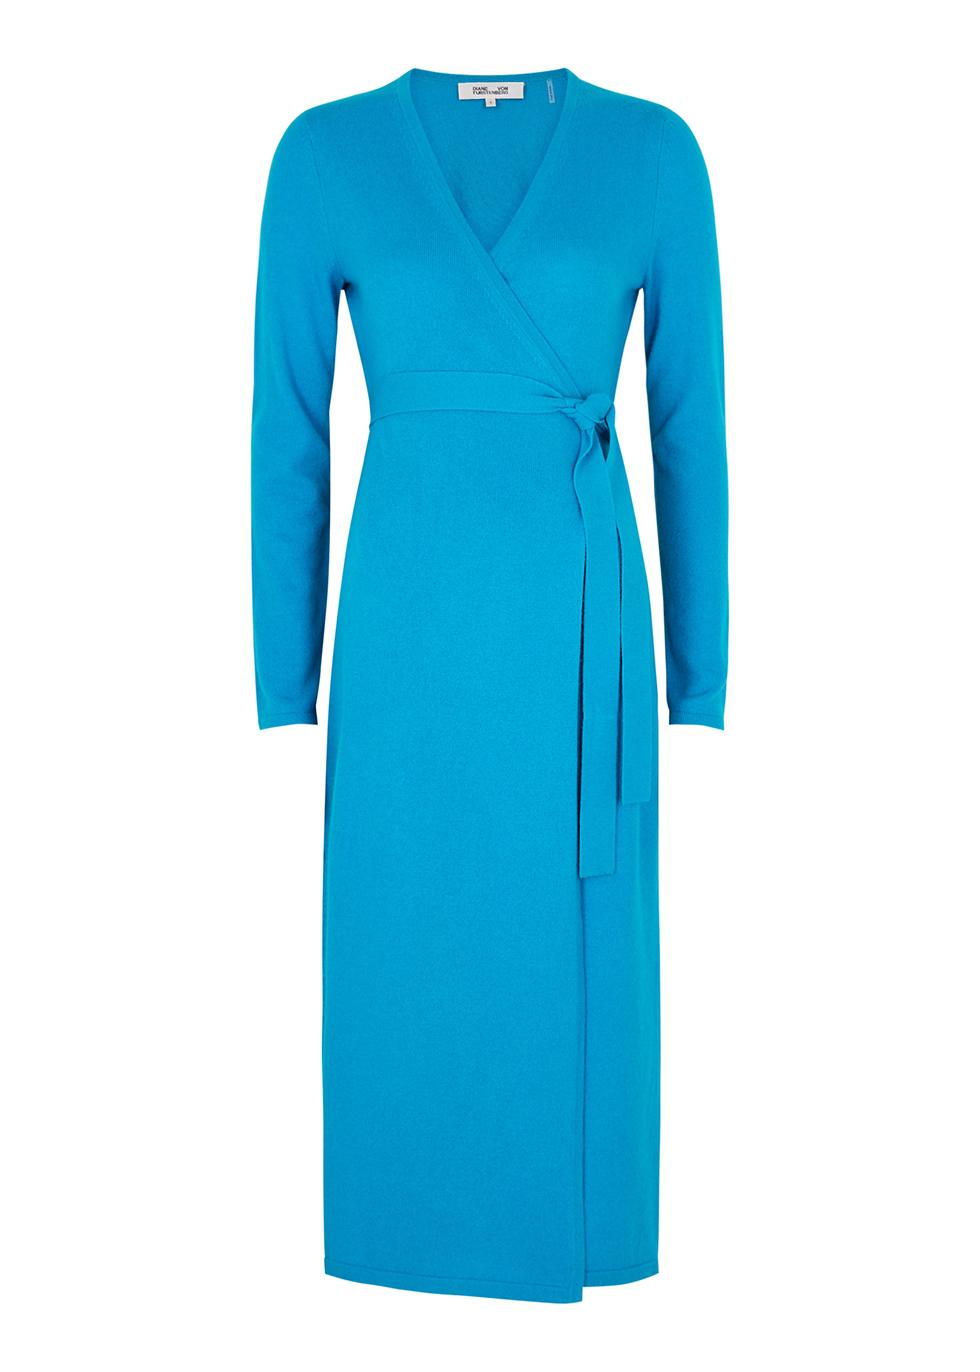 Astrid blue wool-blend wrap dress by DIANE VON FURSTENBERG